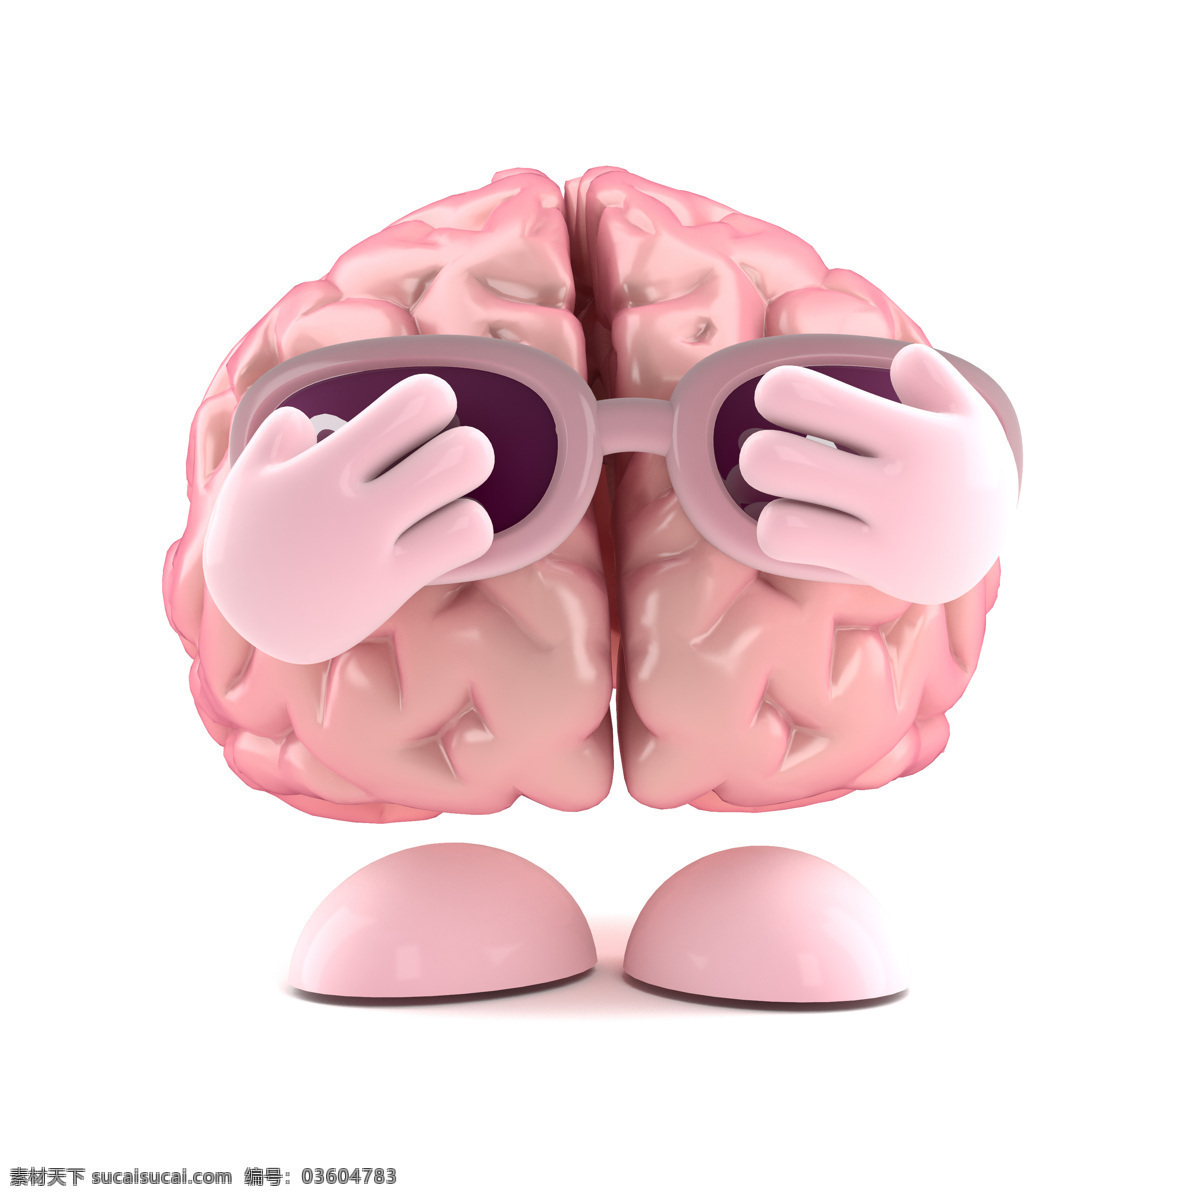 大脑 漫画 人类大脑 大脑漫画 大脑设计 卡通大脑 大脑人物 虚拟人物 儿童卡通 卡通动画 脑细胞 脑容量 太阳镜 动漫动画